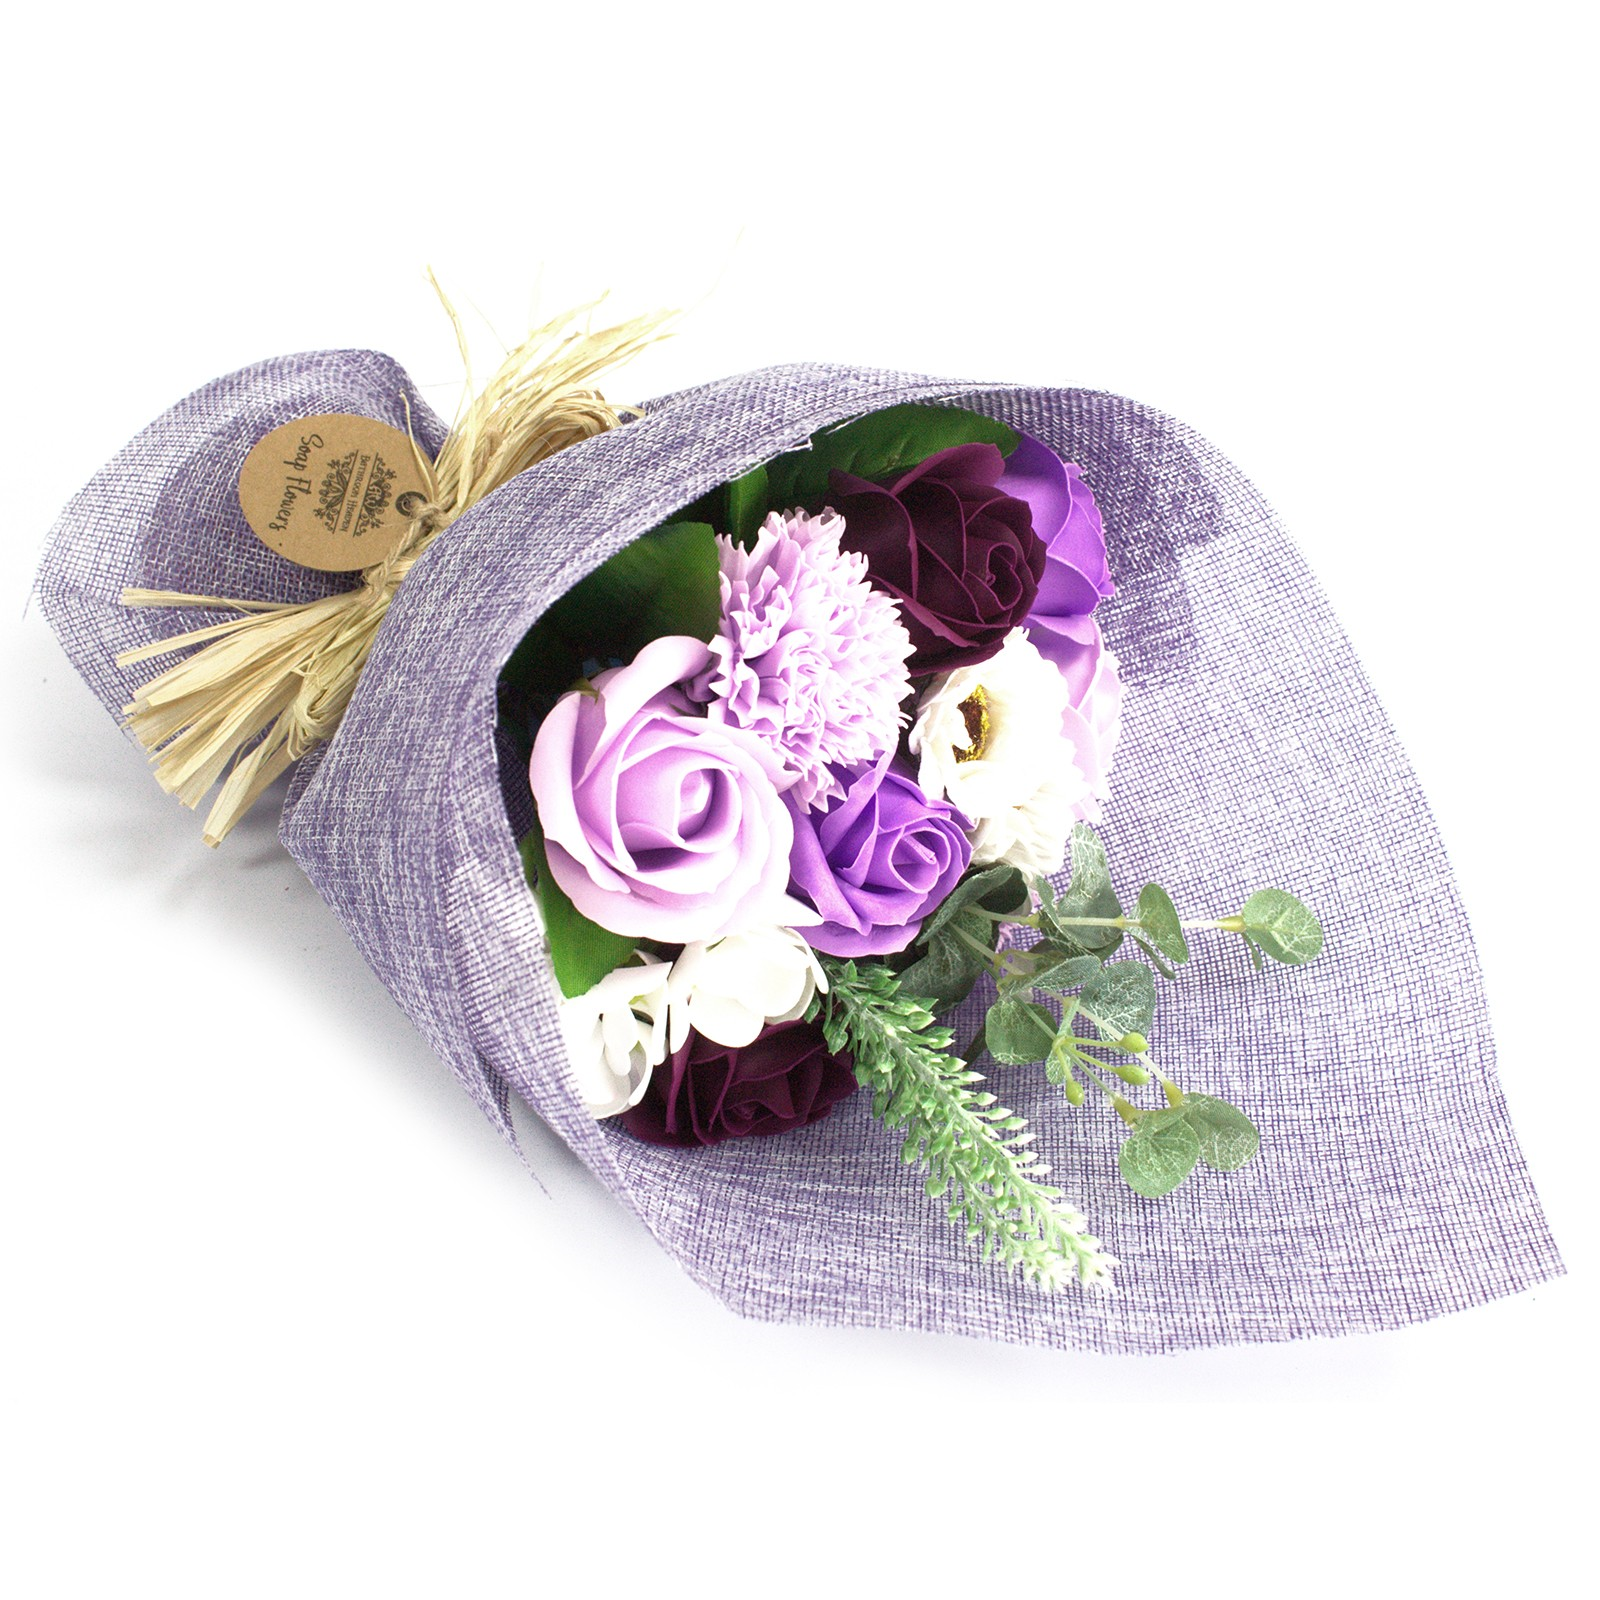 Lavender soap flower bouquet